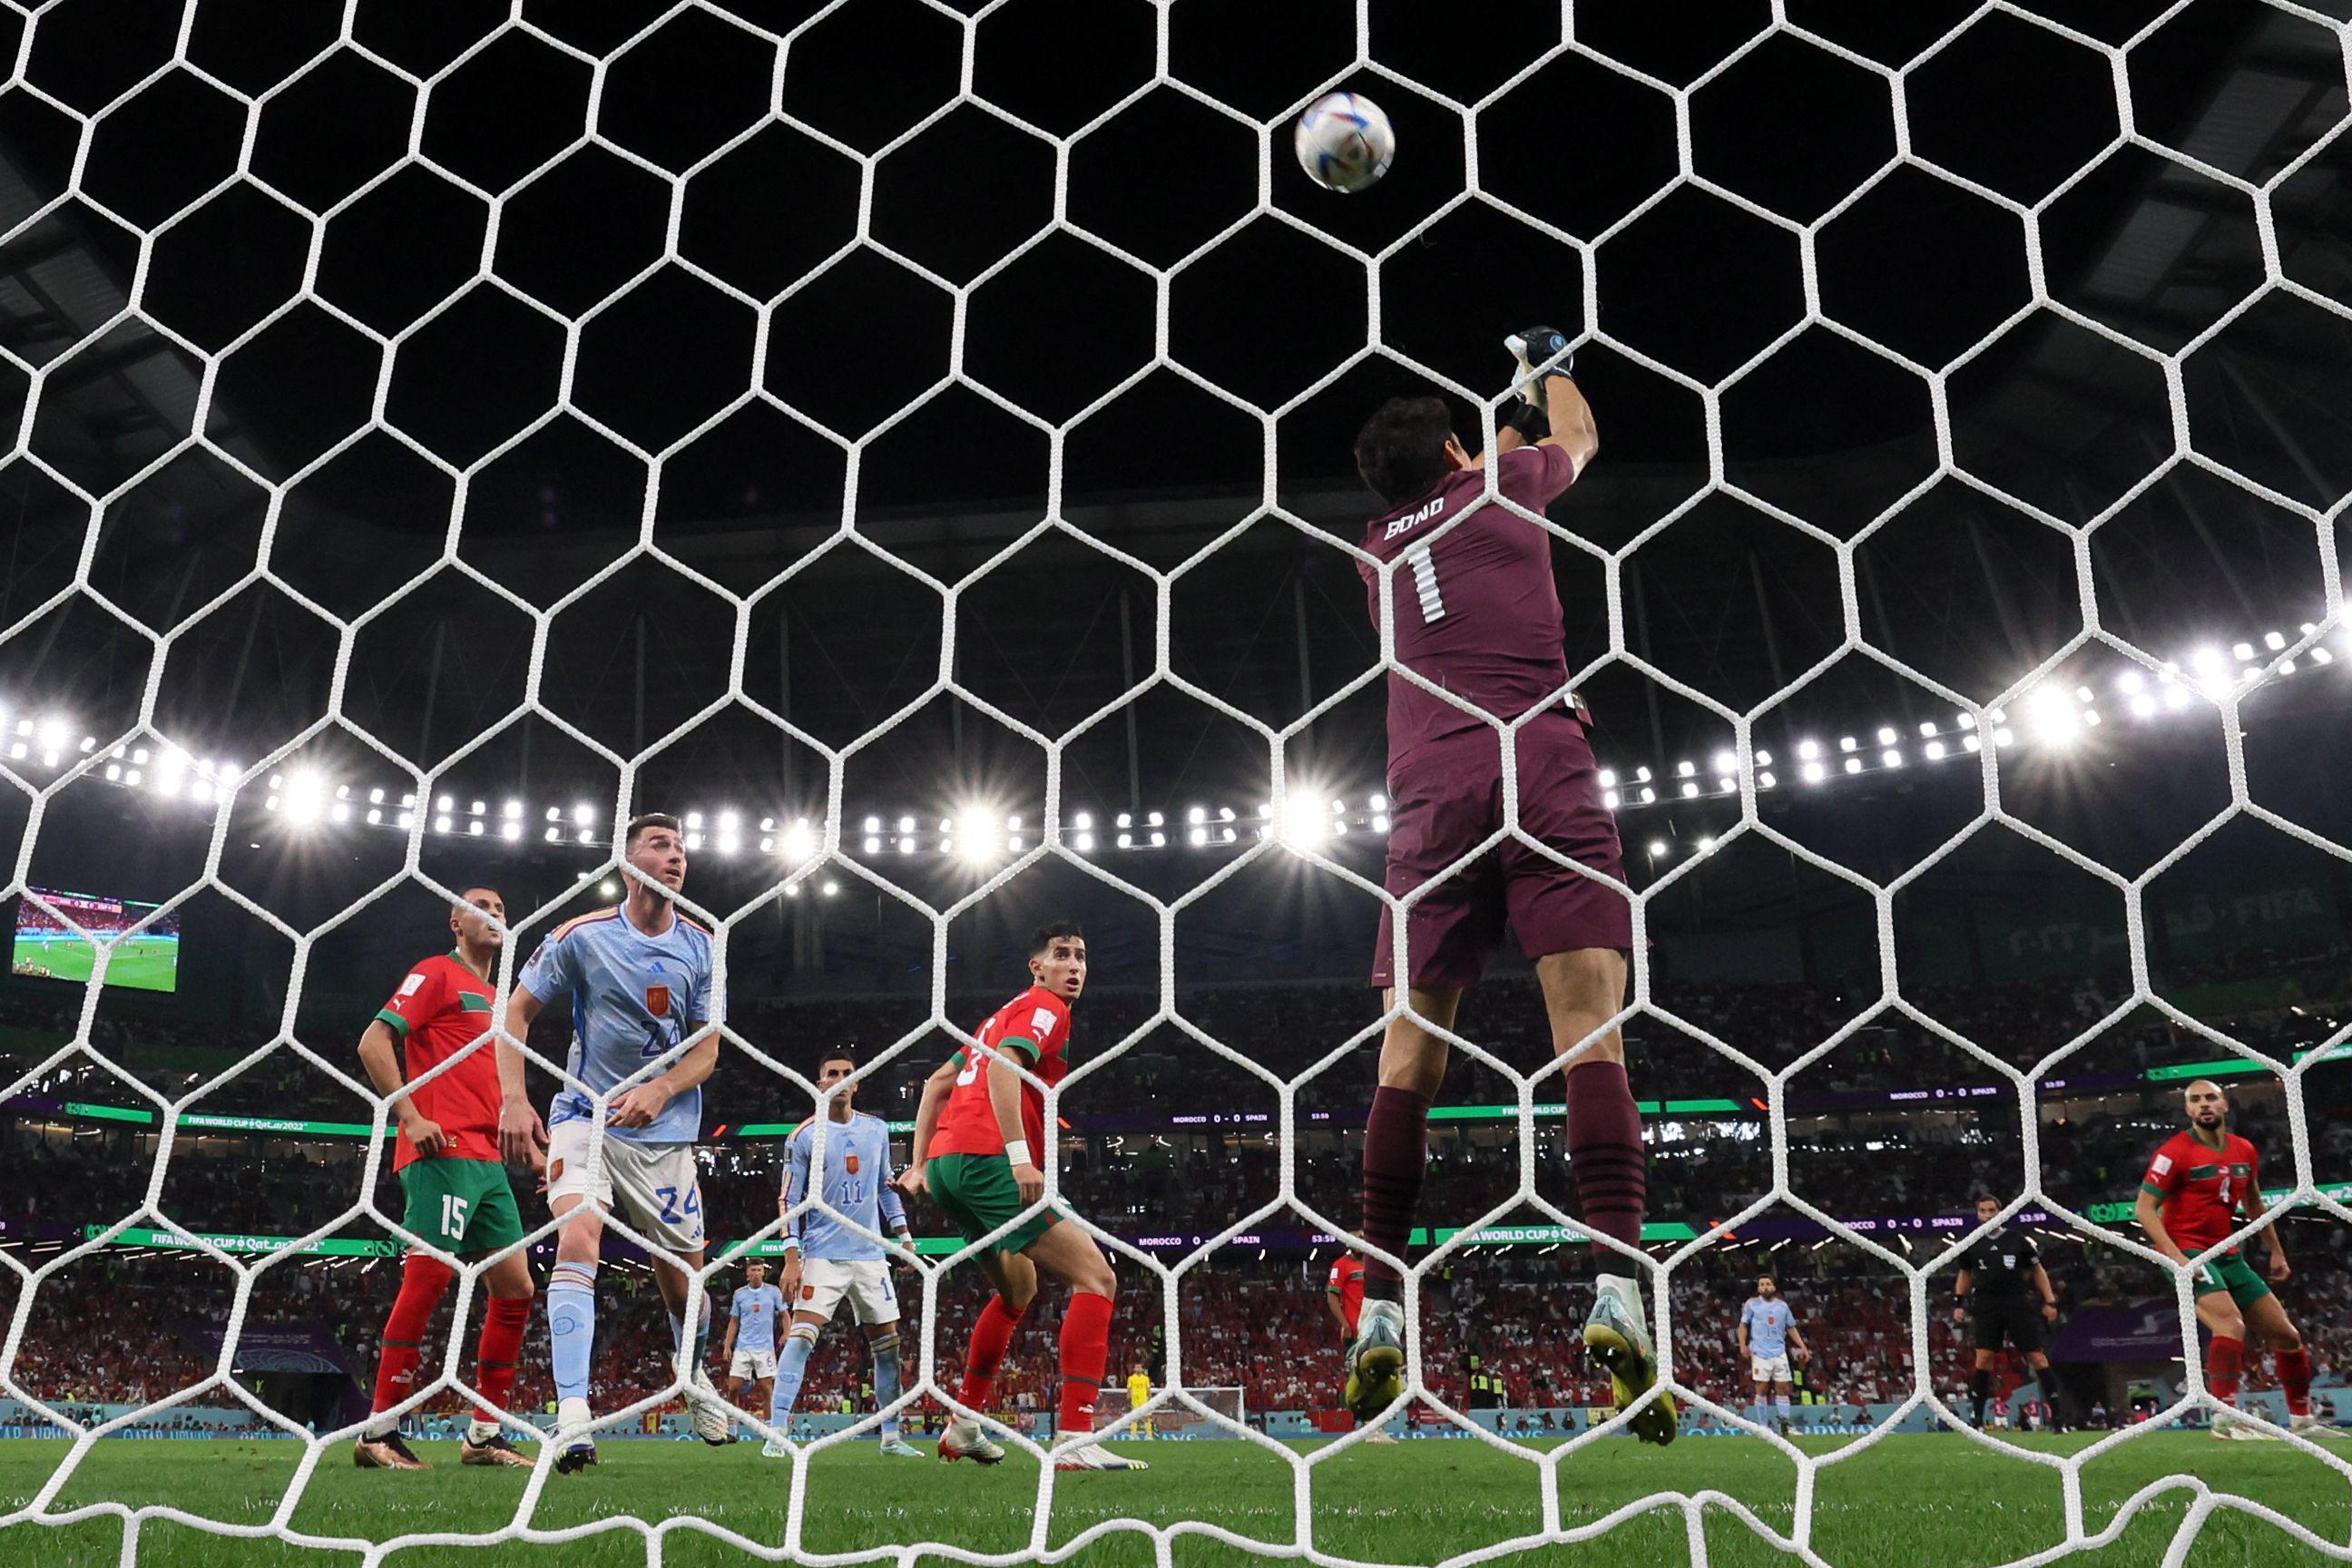 (ÖZET) Fas - İspanya maç sonucu: 0-0 (Penaltılar: 3-0) | 2022 Dünya Kupası Son 16 Turu | Fas, penaltılarla çeyrek finalde